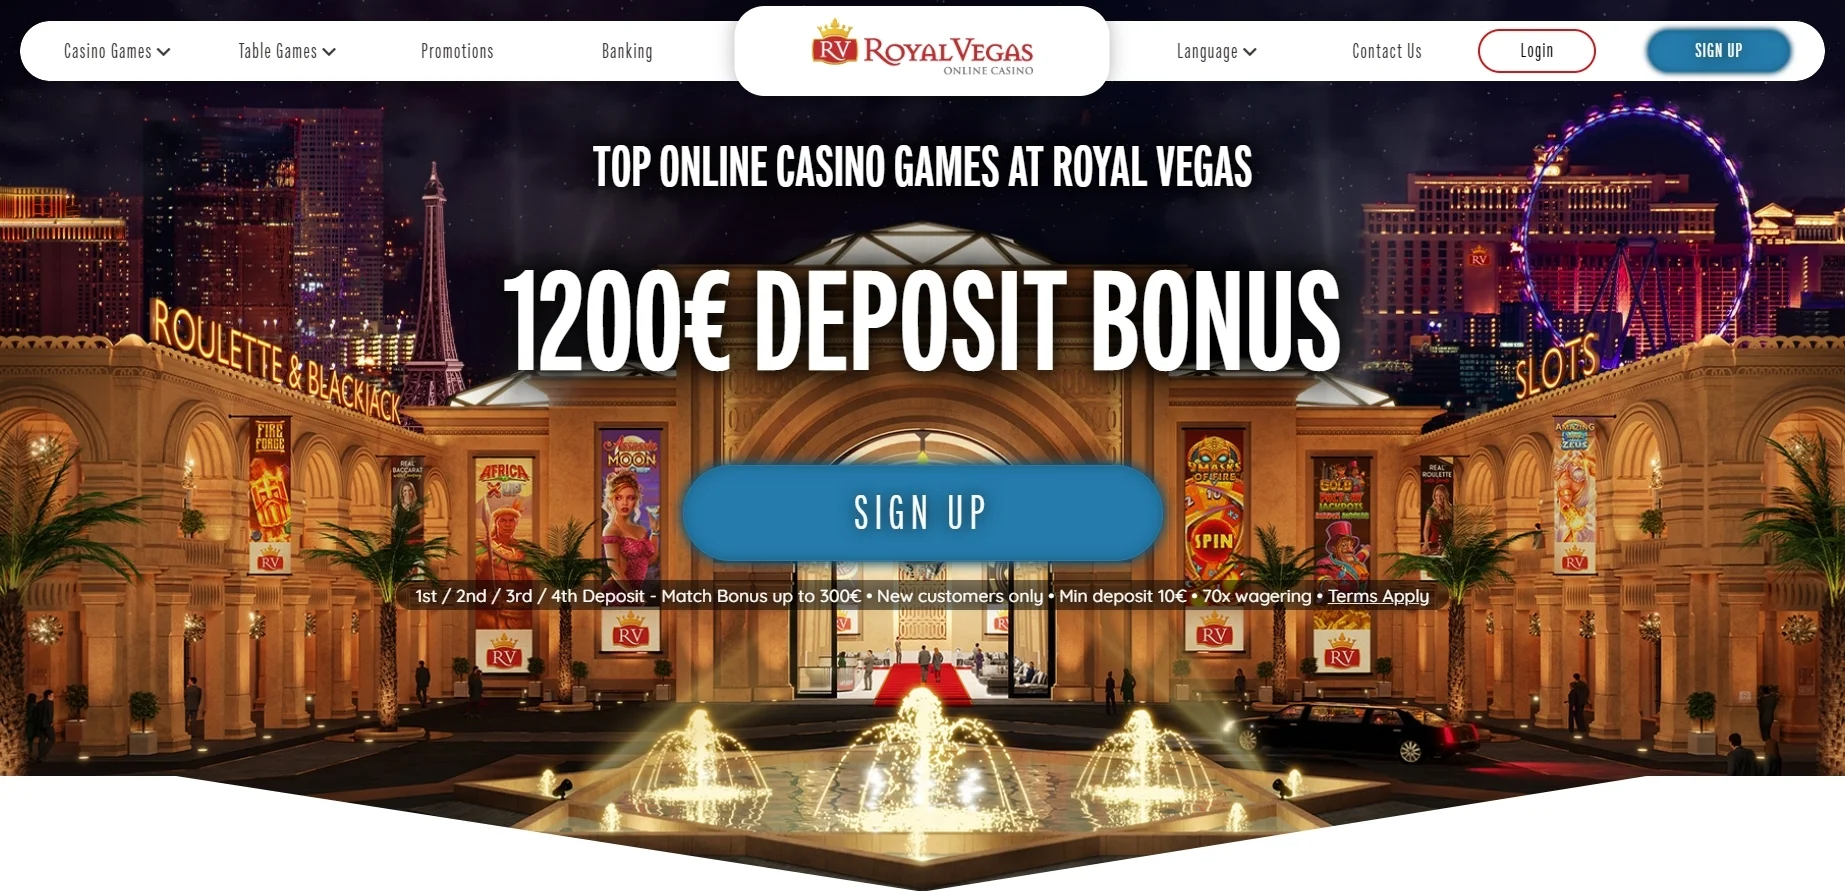 Royal Vegas casino